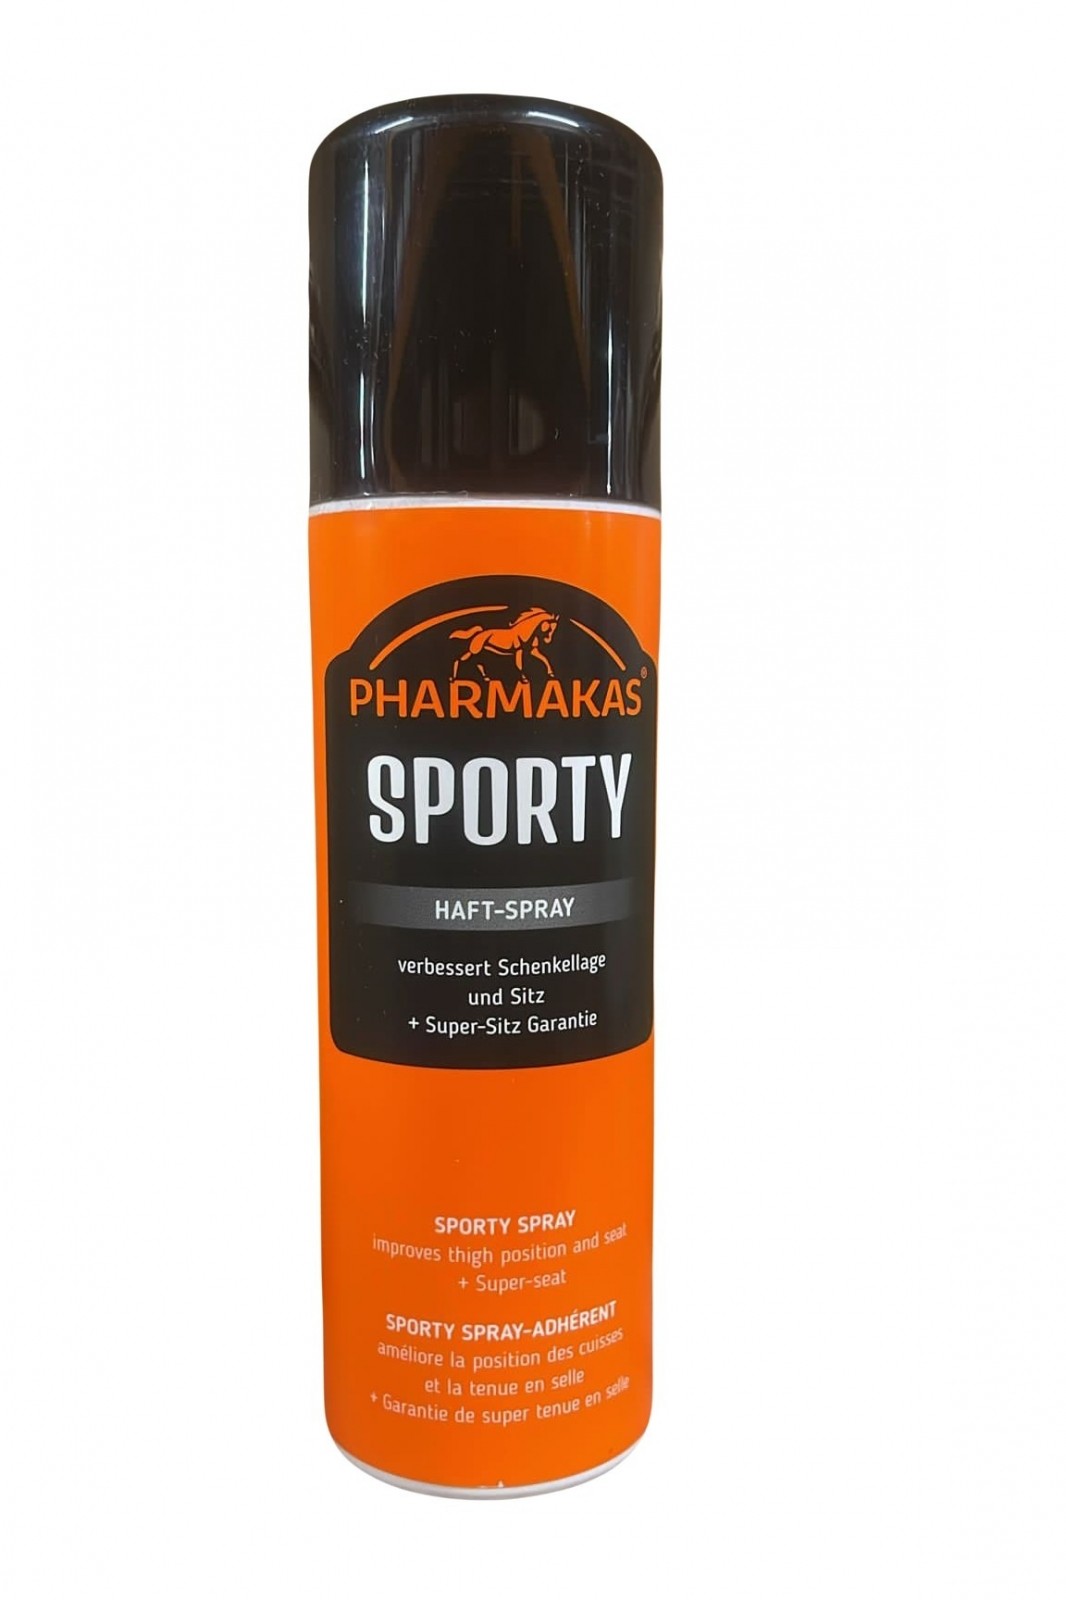 Pharmakas Sporty Haft-Spray (Sticky Bum Spray)